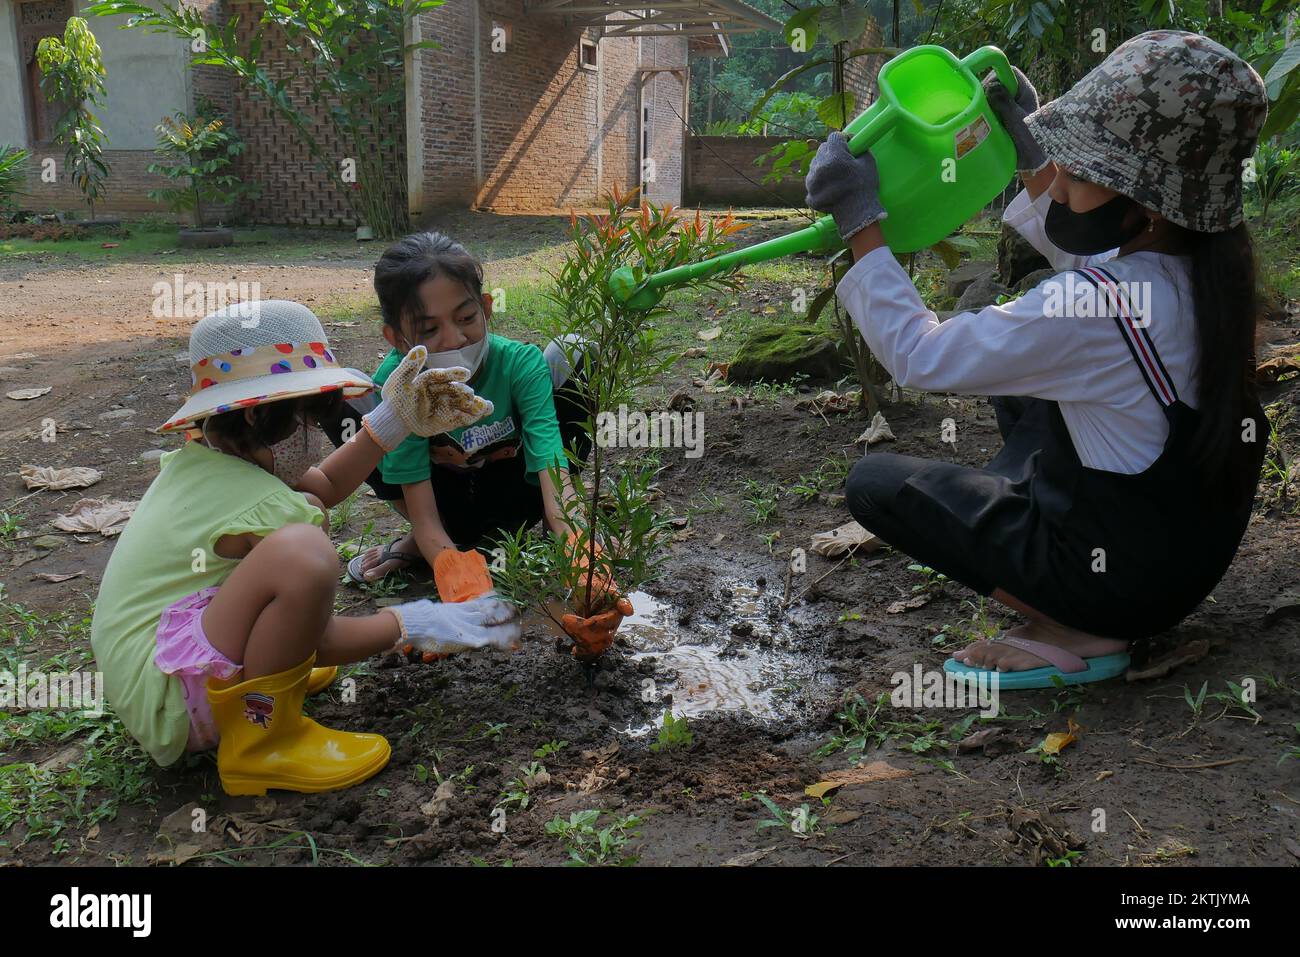 algunos niños plantan árboles juntos en el patio, mantienen el ambiente limpio, saludable, aire fresco, mejoran la calidad del oxígeno Foto de stock